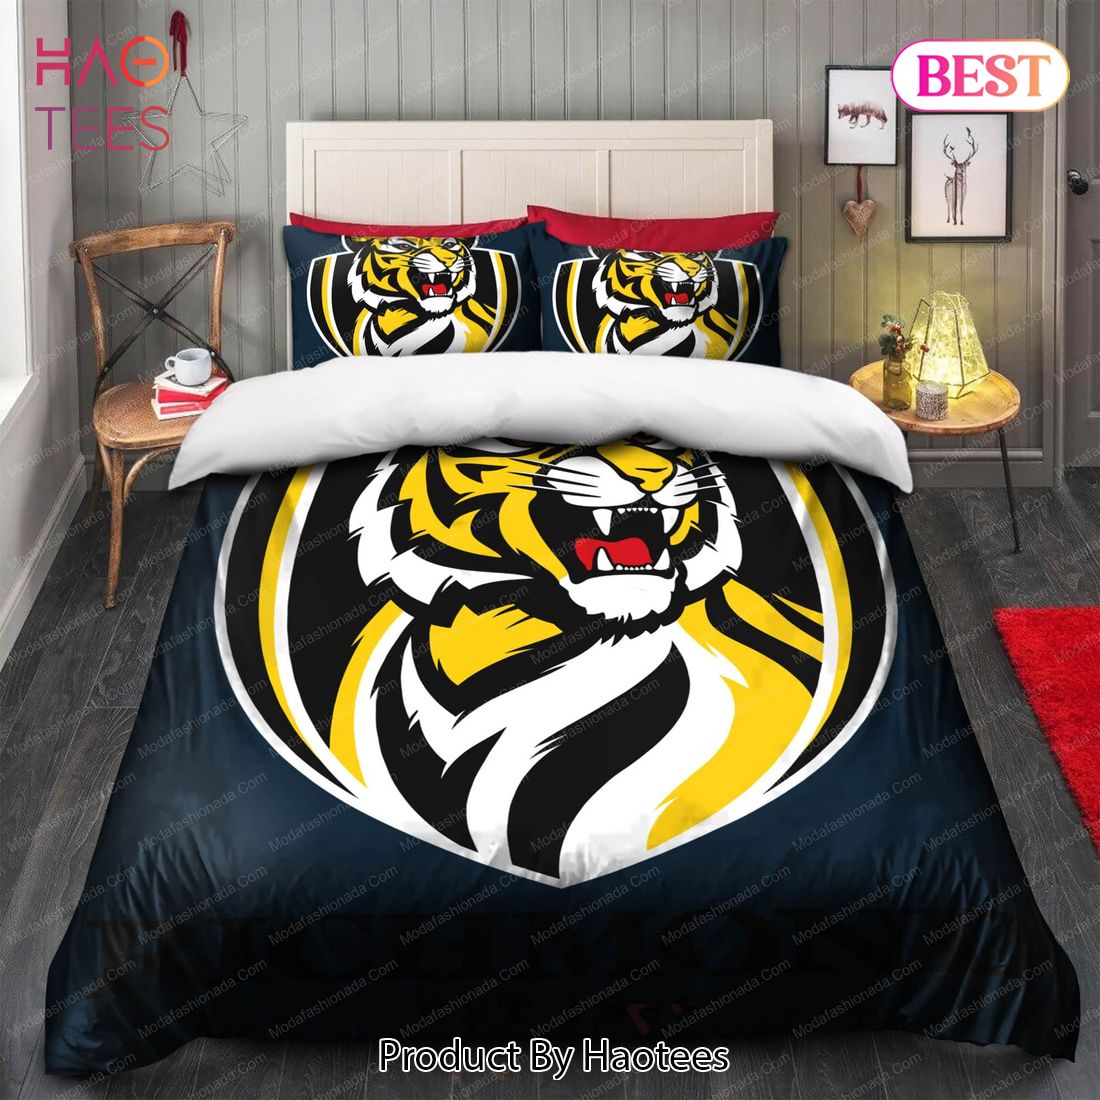 Buy Richmond Football Club Logo Bedding Sets Bed Sets, Bedroom Sets, Comforter Sets, Duvet Cover, Bedspread